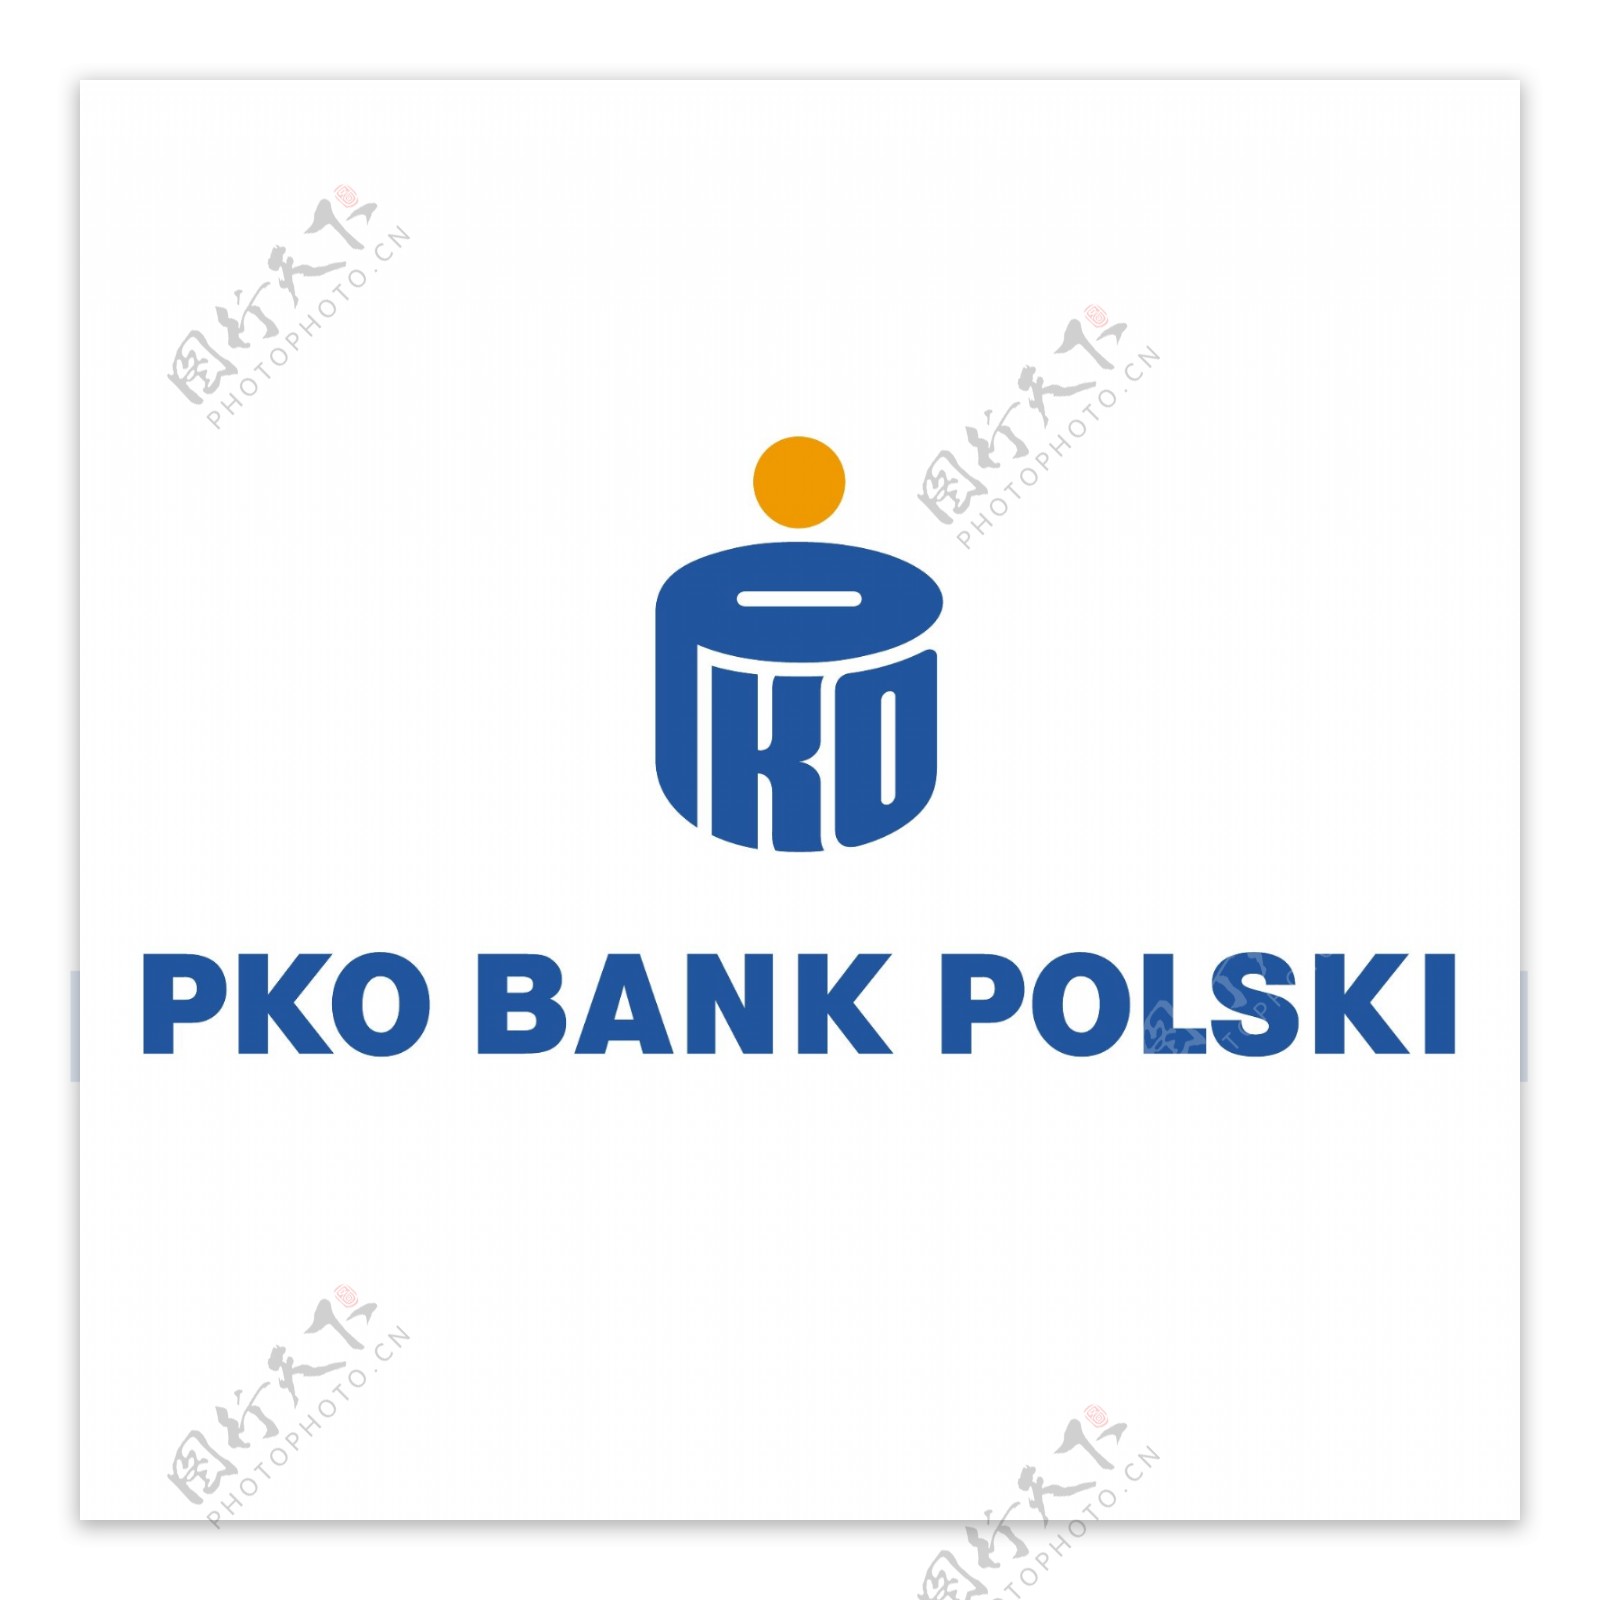 PKO银行波兰语